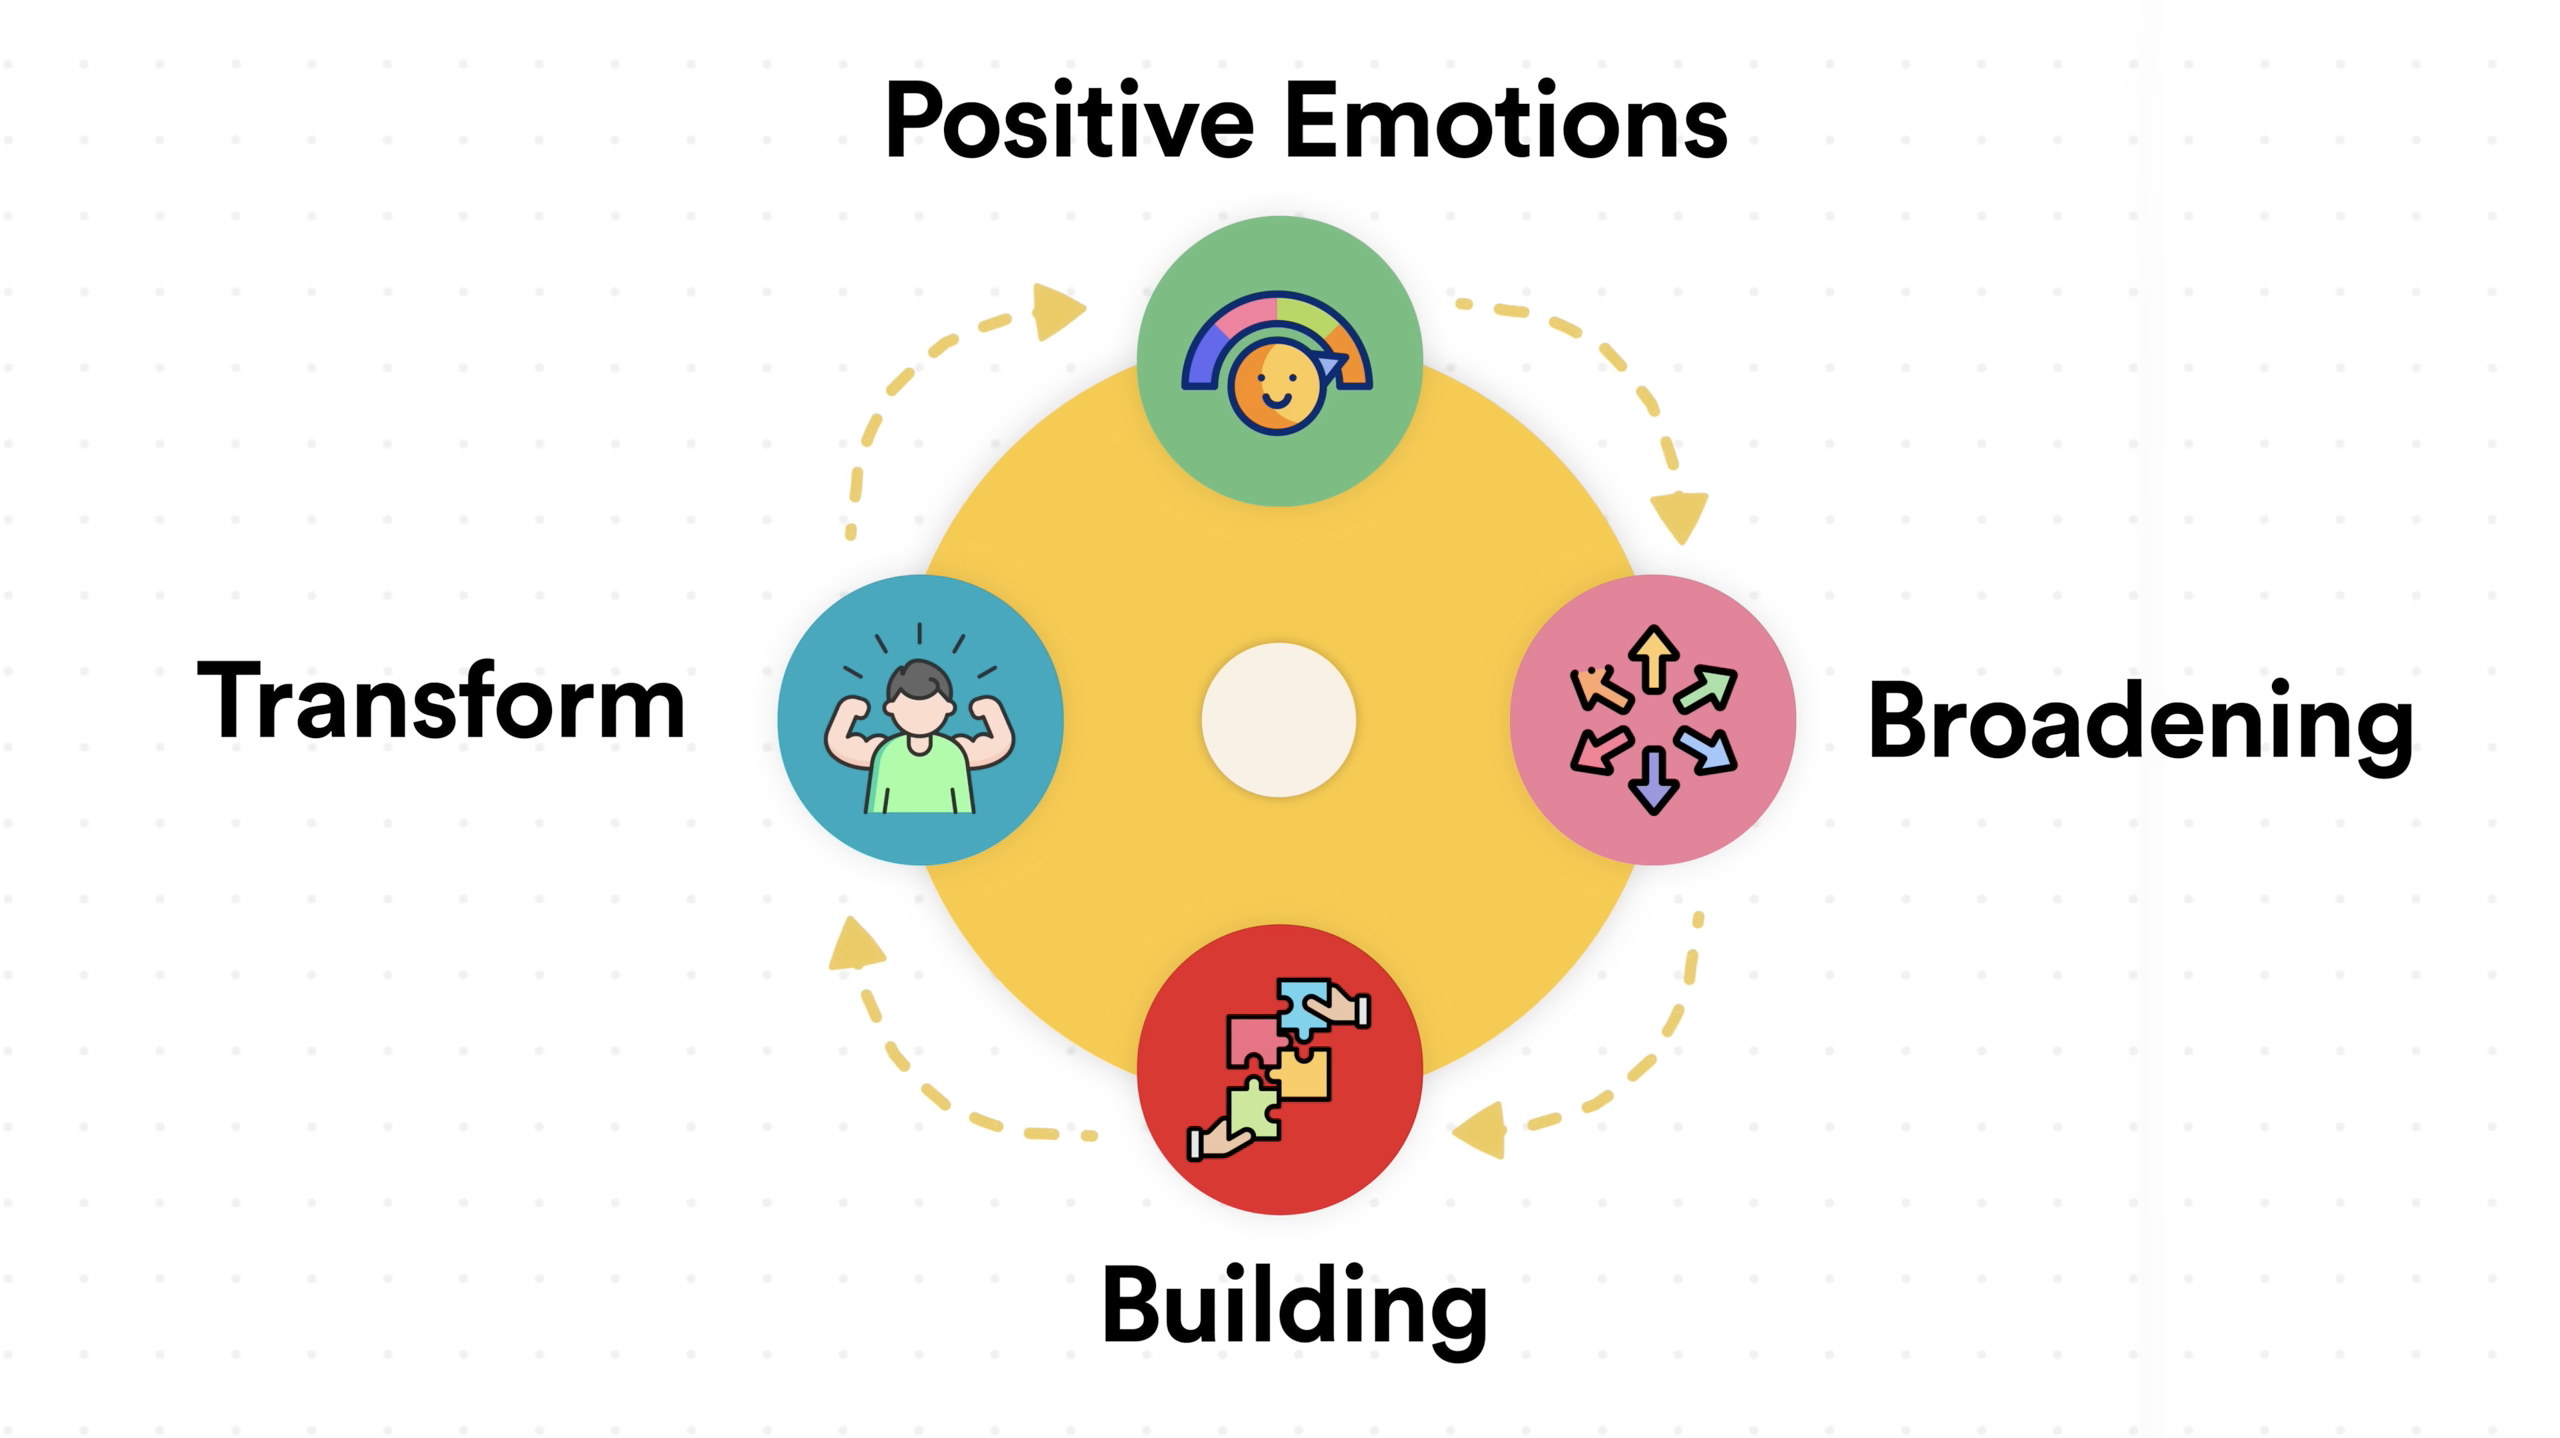 正向情緒會擴展我們的意識，建構與外界聯結，開創新的可能，形成正向循環。